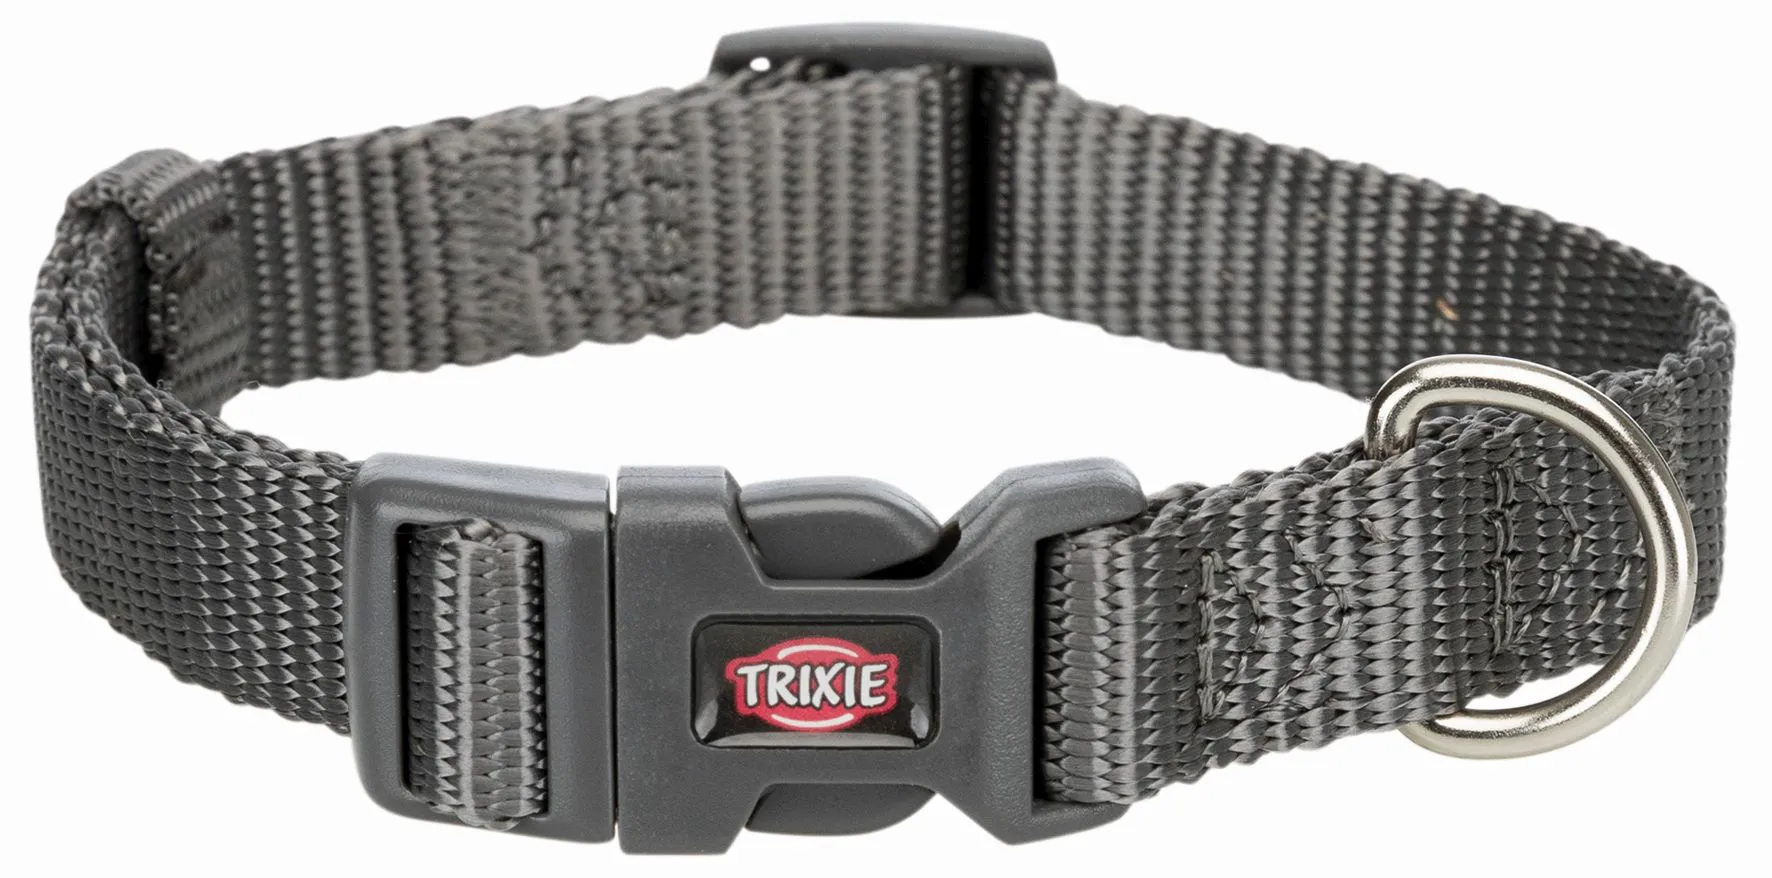  Ошейник Trixie Premium, XXS-XS, 15-25см, 10мм, графит